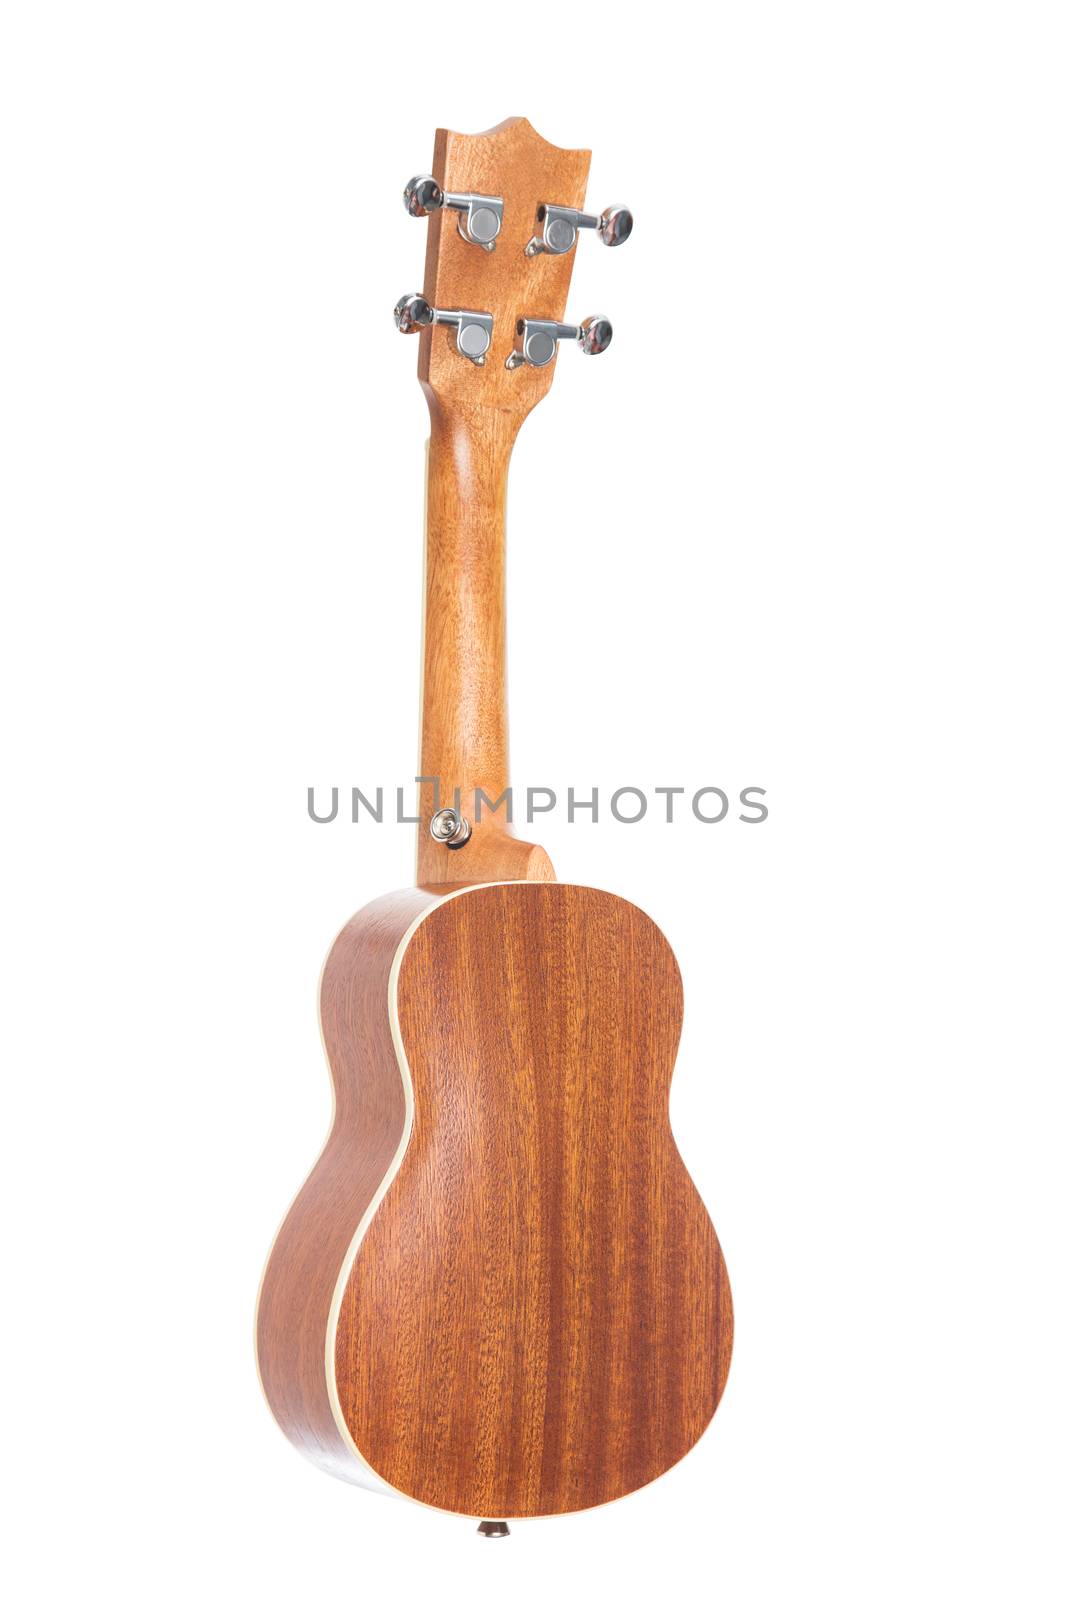 Back view of ukulele Hawaiian guitar, isolated on white background 